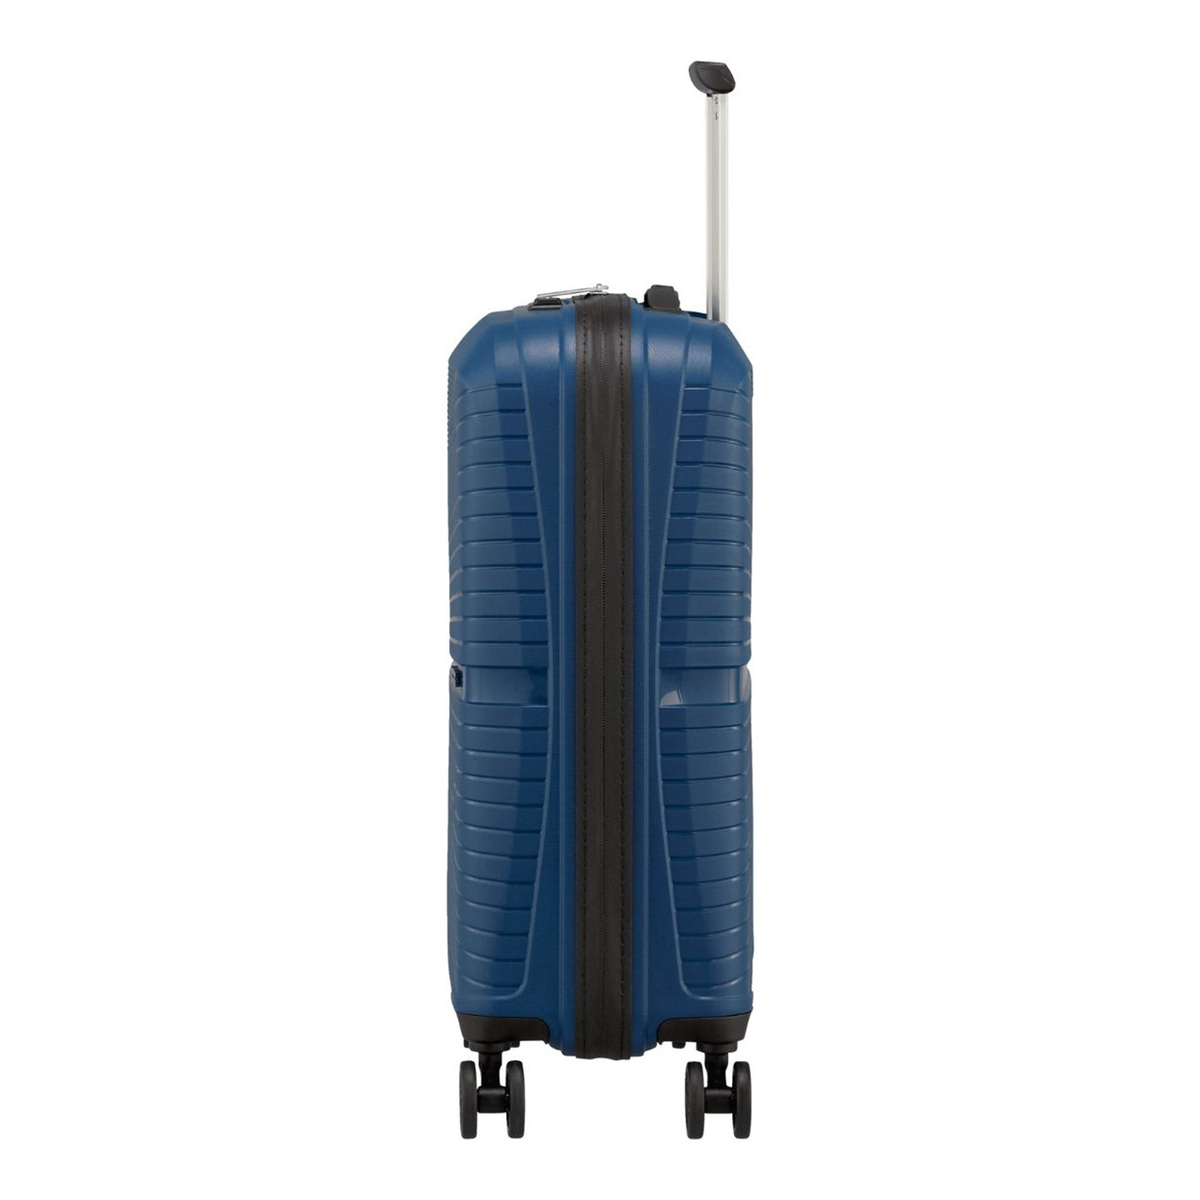 امريكان توريستر حقيبة سفر بعجلات صلبة إيركونيك سبينر مع قفل TSA، 77 سم، أزرق ميد نايت